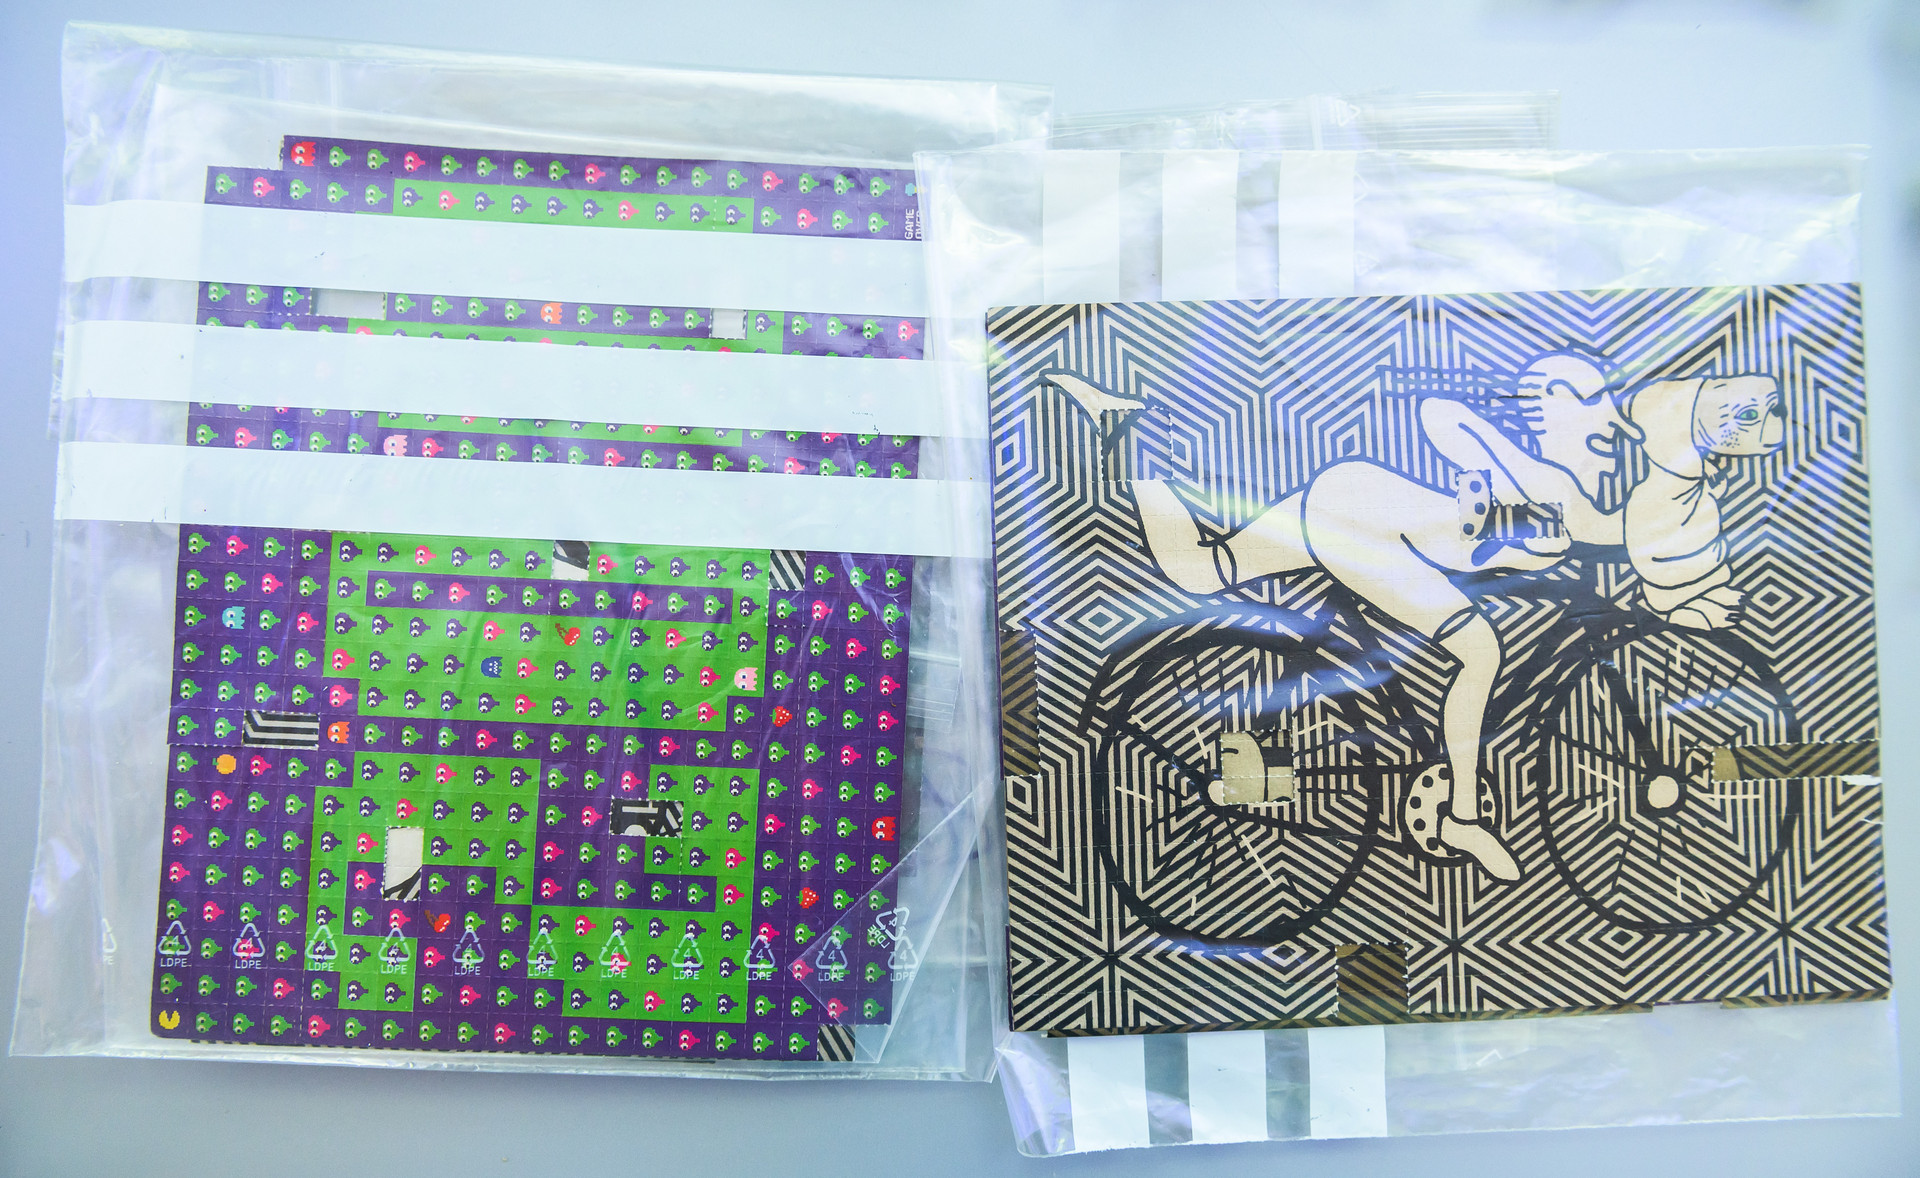 Sichergestellte mit LSD beträufelte Pappe liegen während einer Pressekonferenz im Bundeskriminalamt auf einem Tisch. Vor 80 Jahren entdeckte ein Chemiker die Wirkung von LSD und sah Potenzial als Medikament darin (c) dpa/Silas Stein